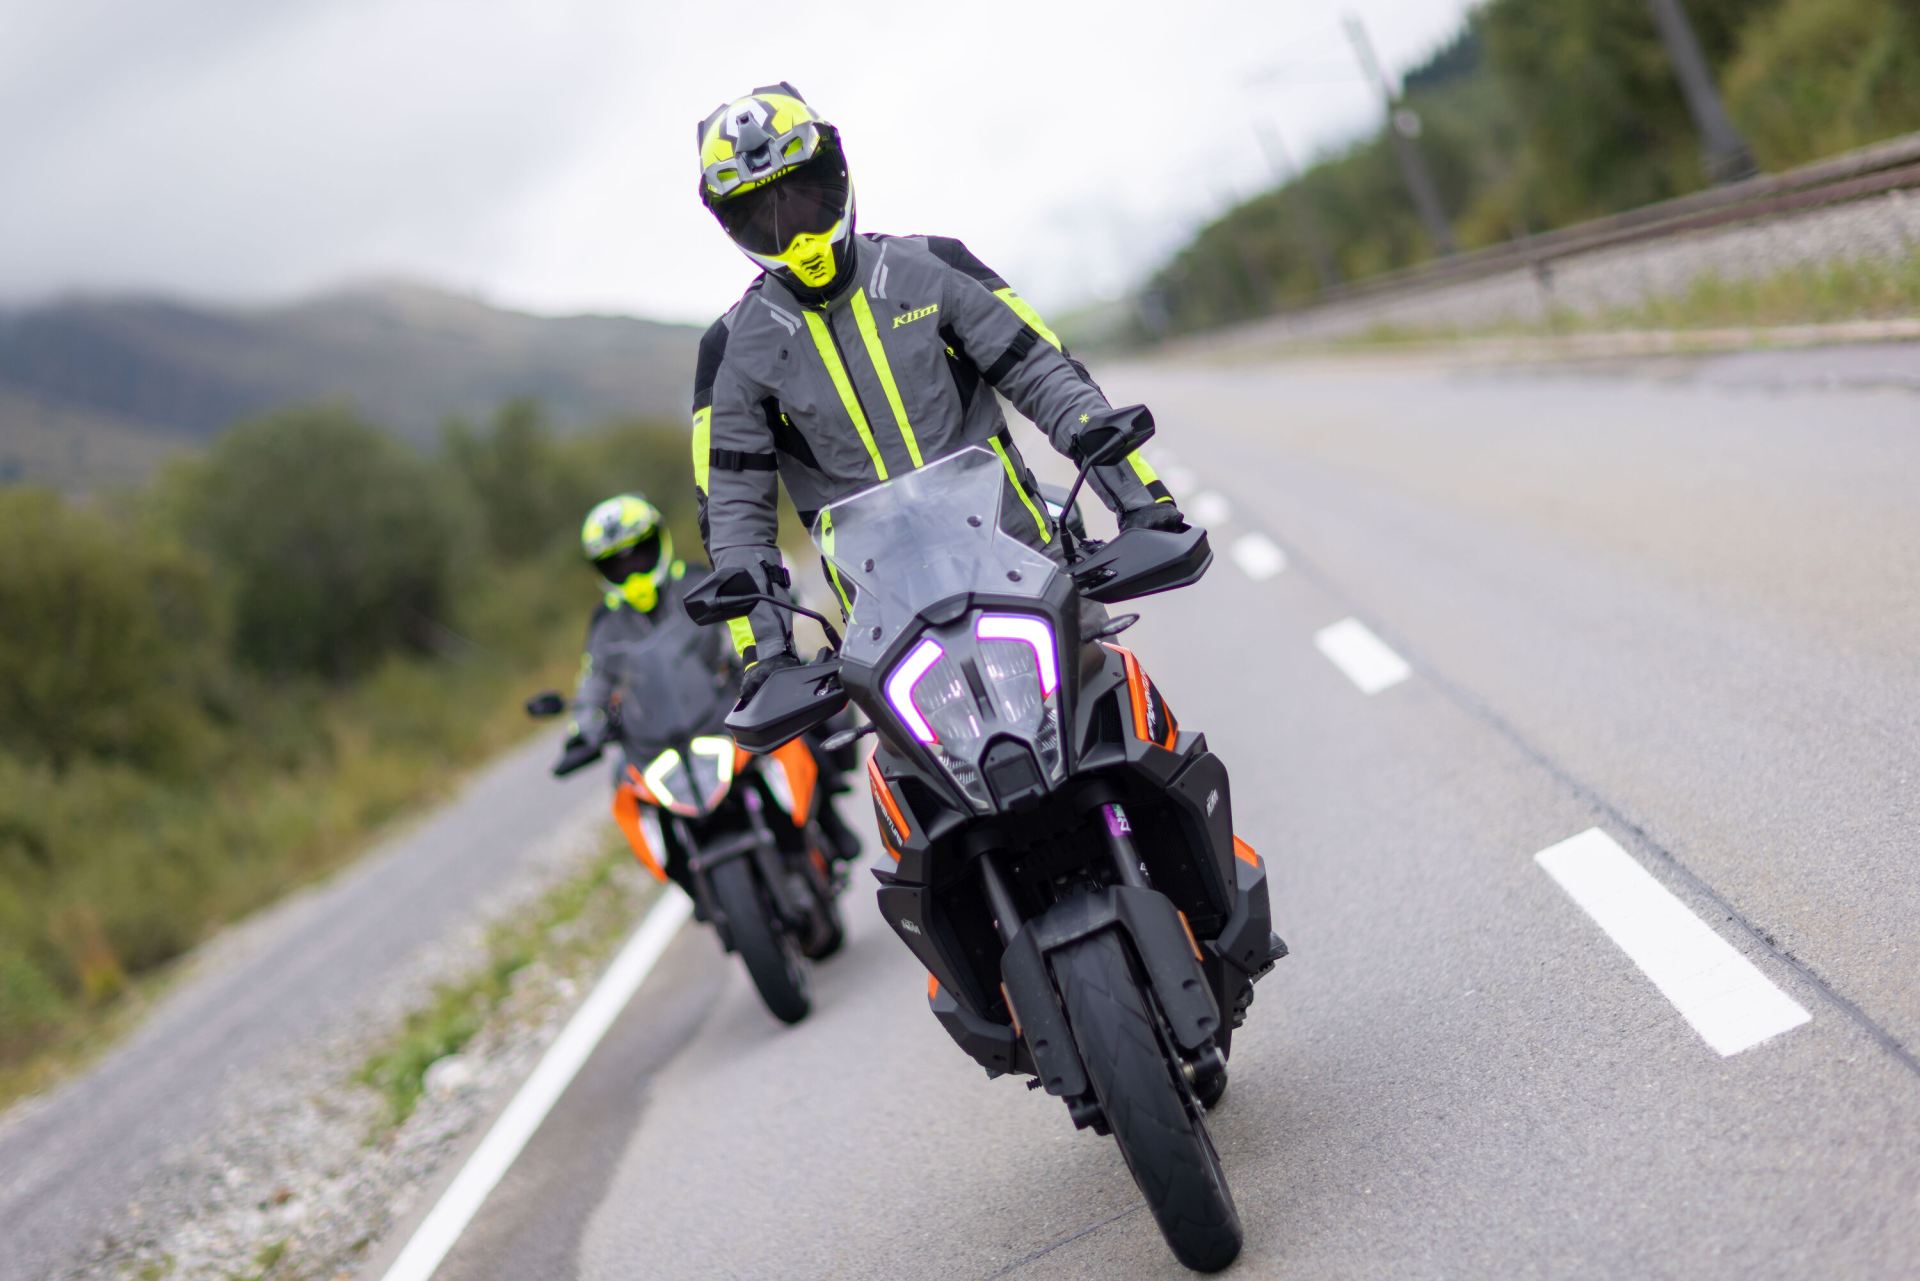 KLIM Motorradkleidung: Entspannt durch den Herbst, mit der Latitude Touring-Kombi von KLIM